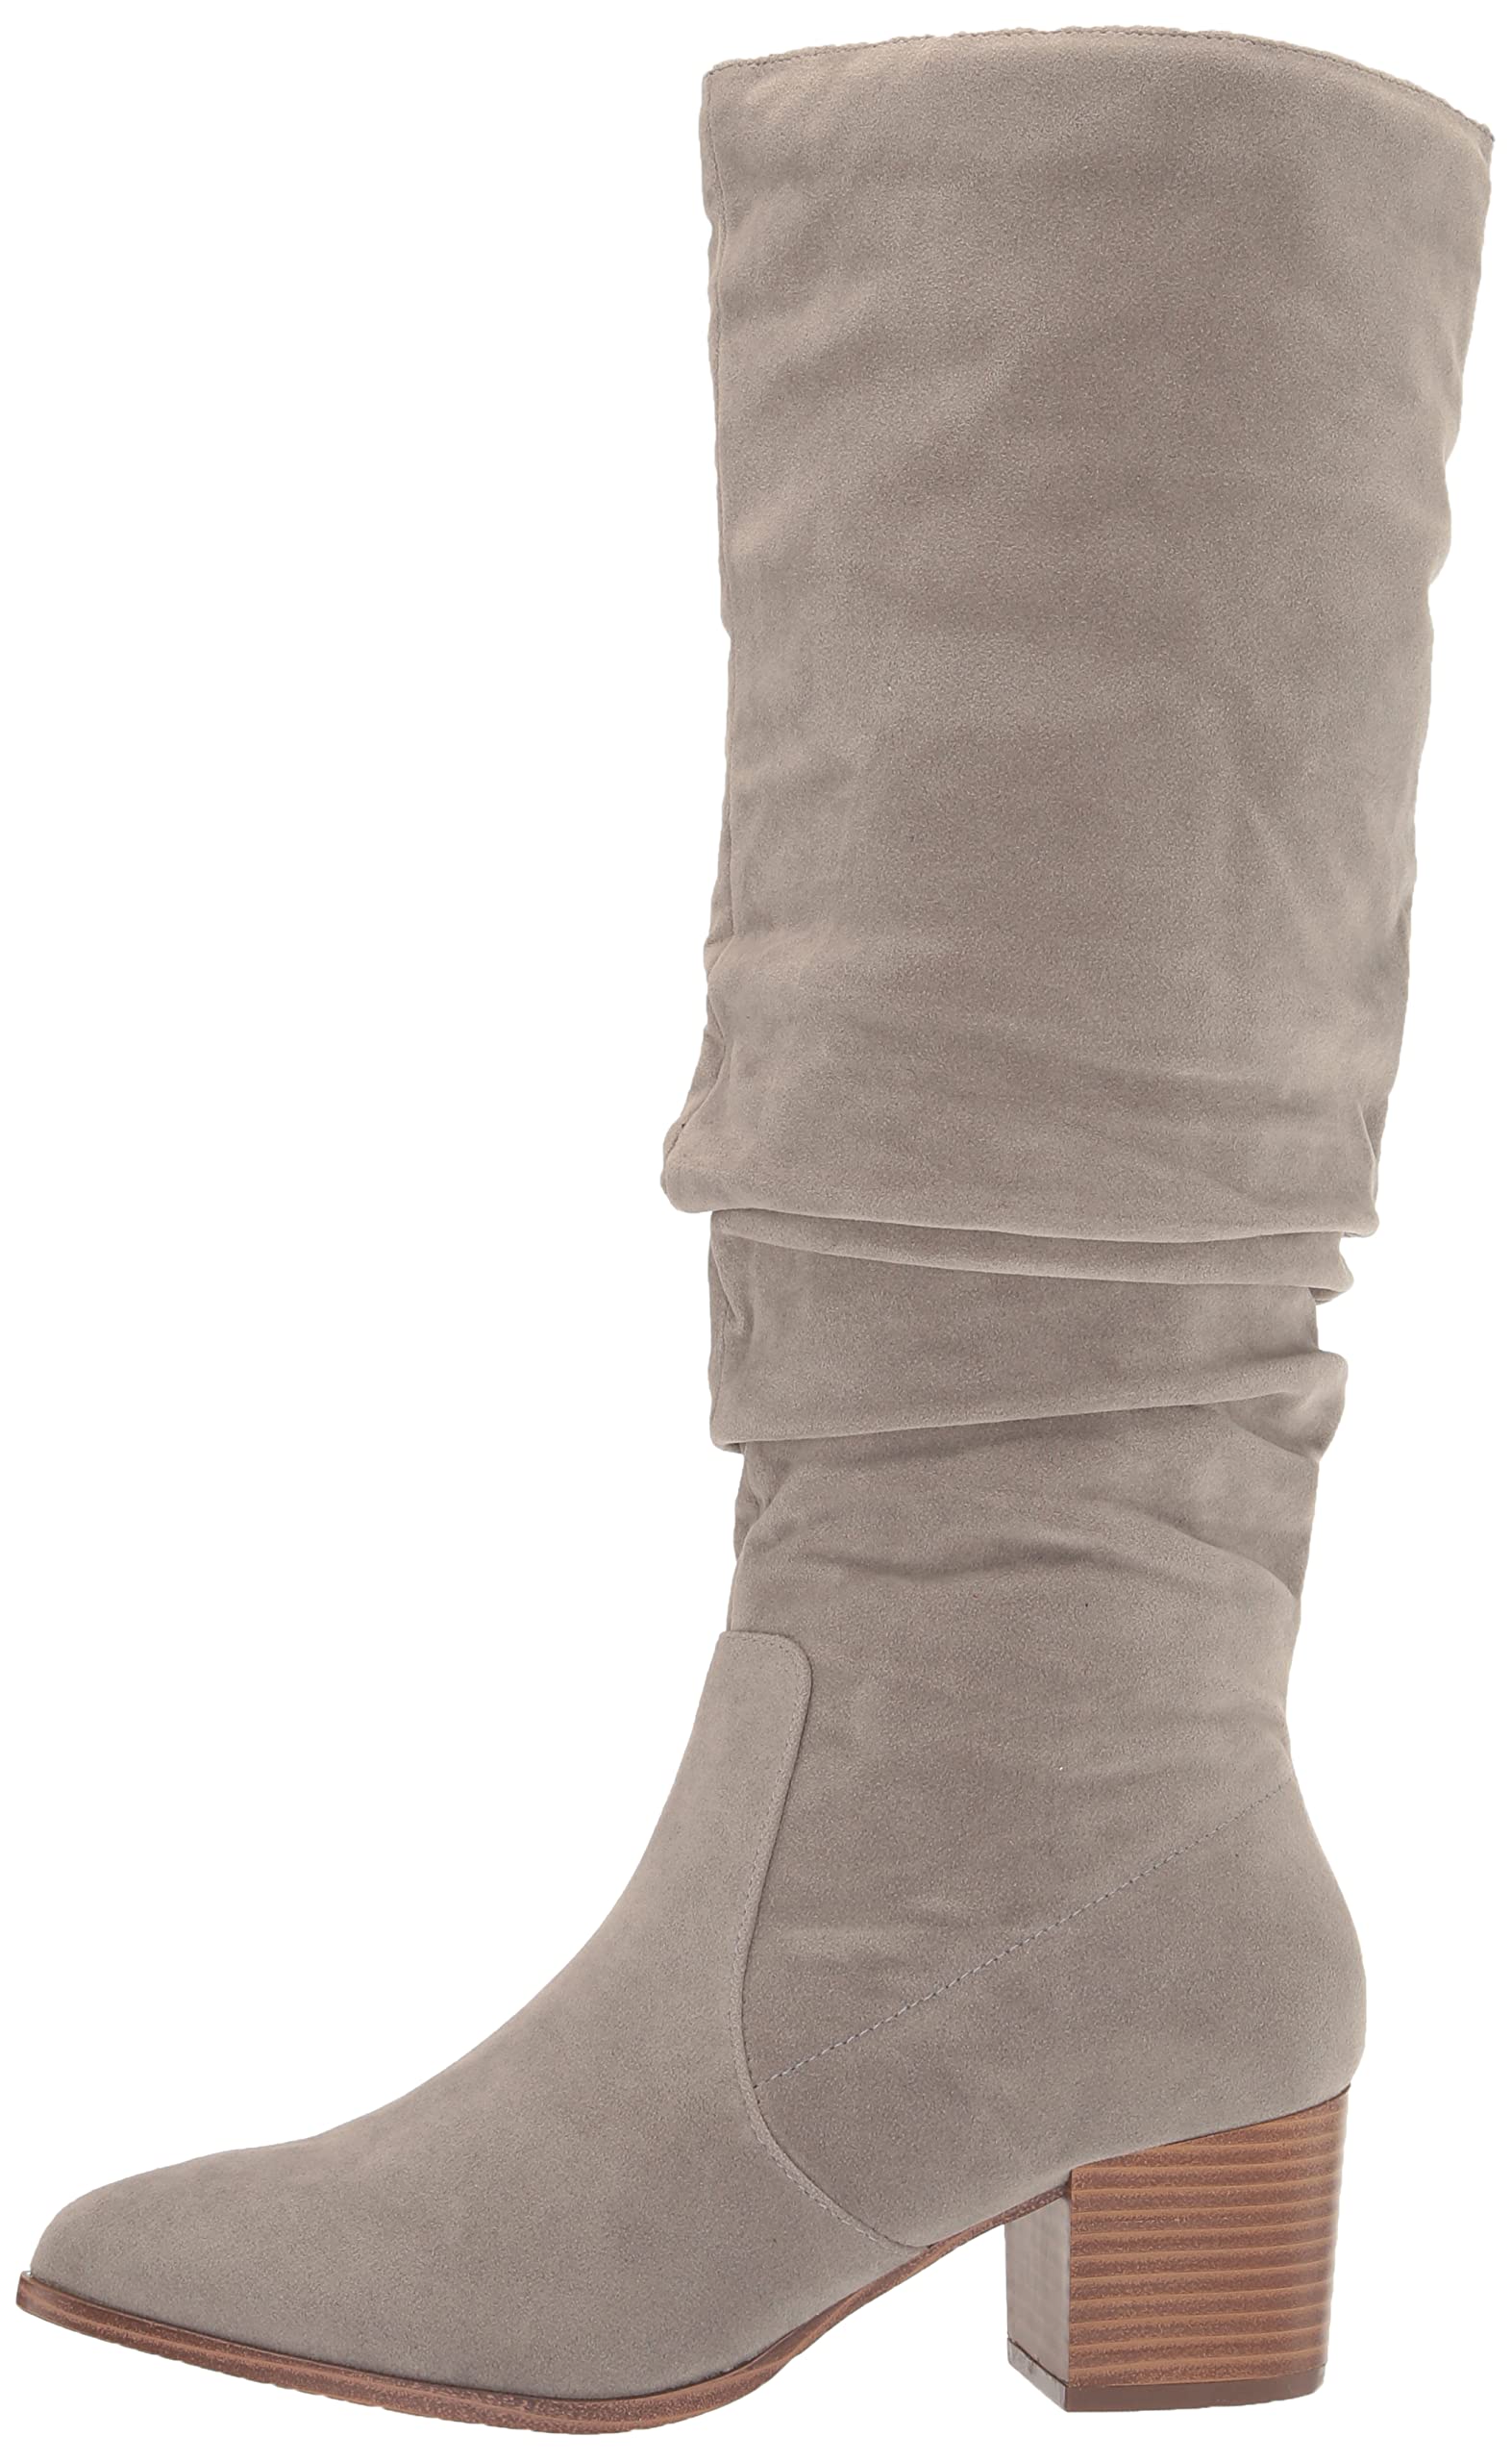 Amazon Essentials Women's Tall Block Heel Boots